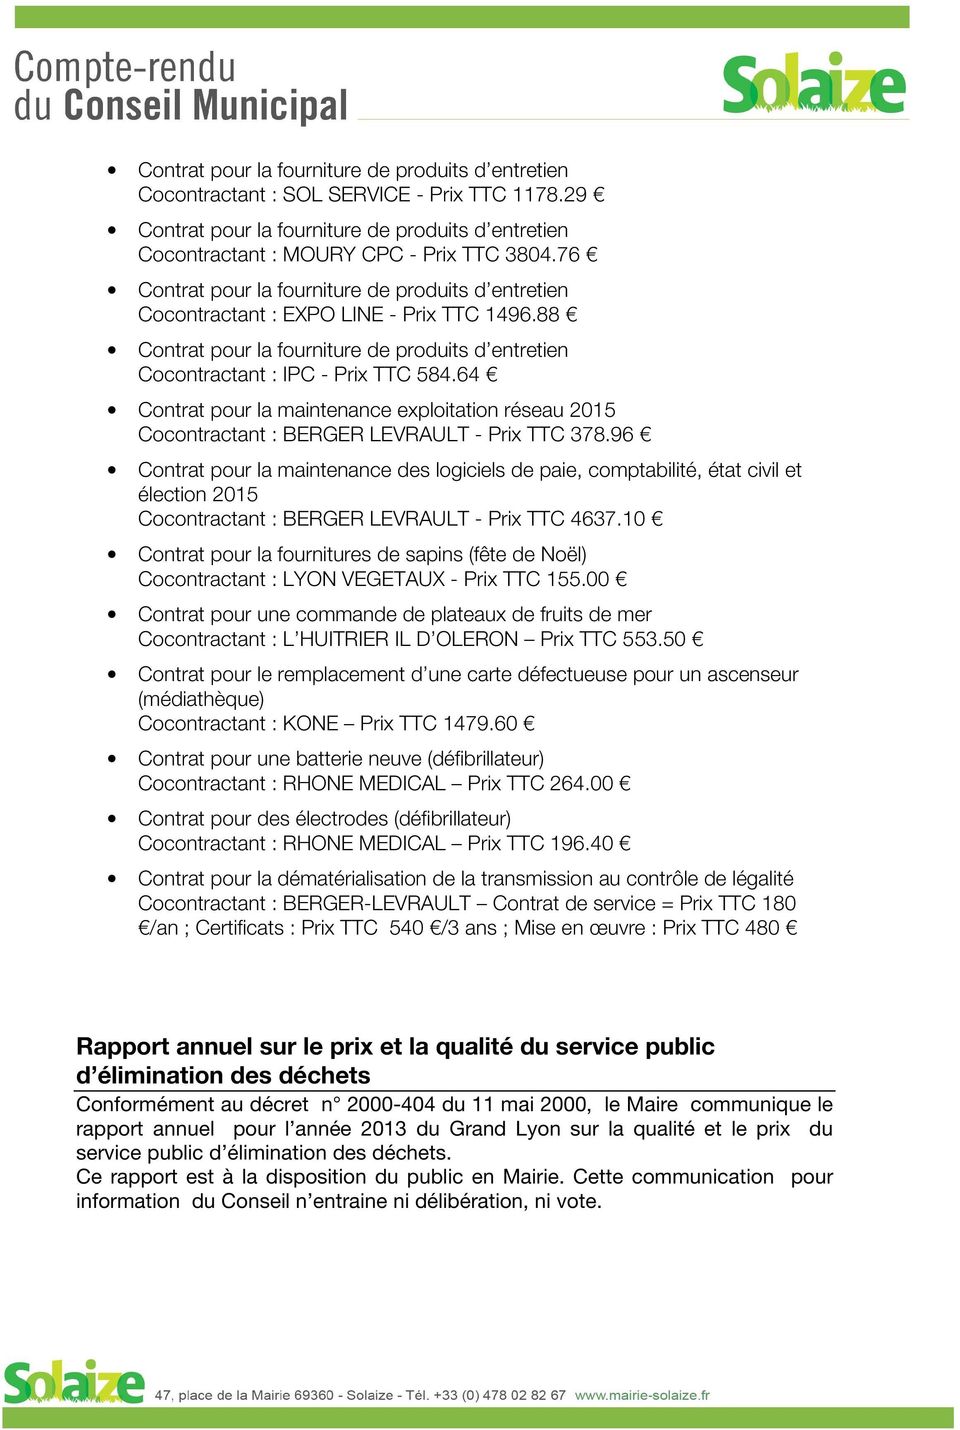 64 Contrat pour la maintenance exploitation réseau 2015 Cocontractant : BERGER LEVRAULT - Prix TTC 378.